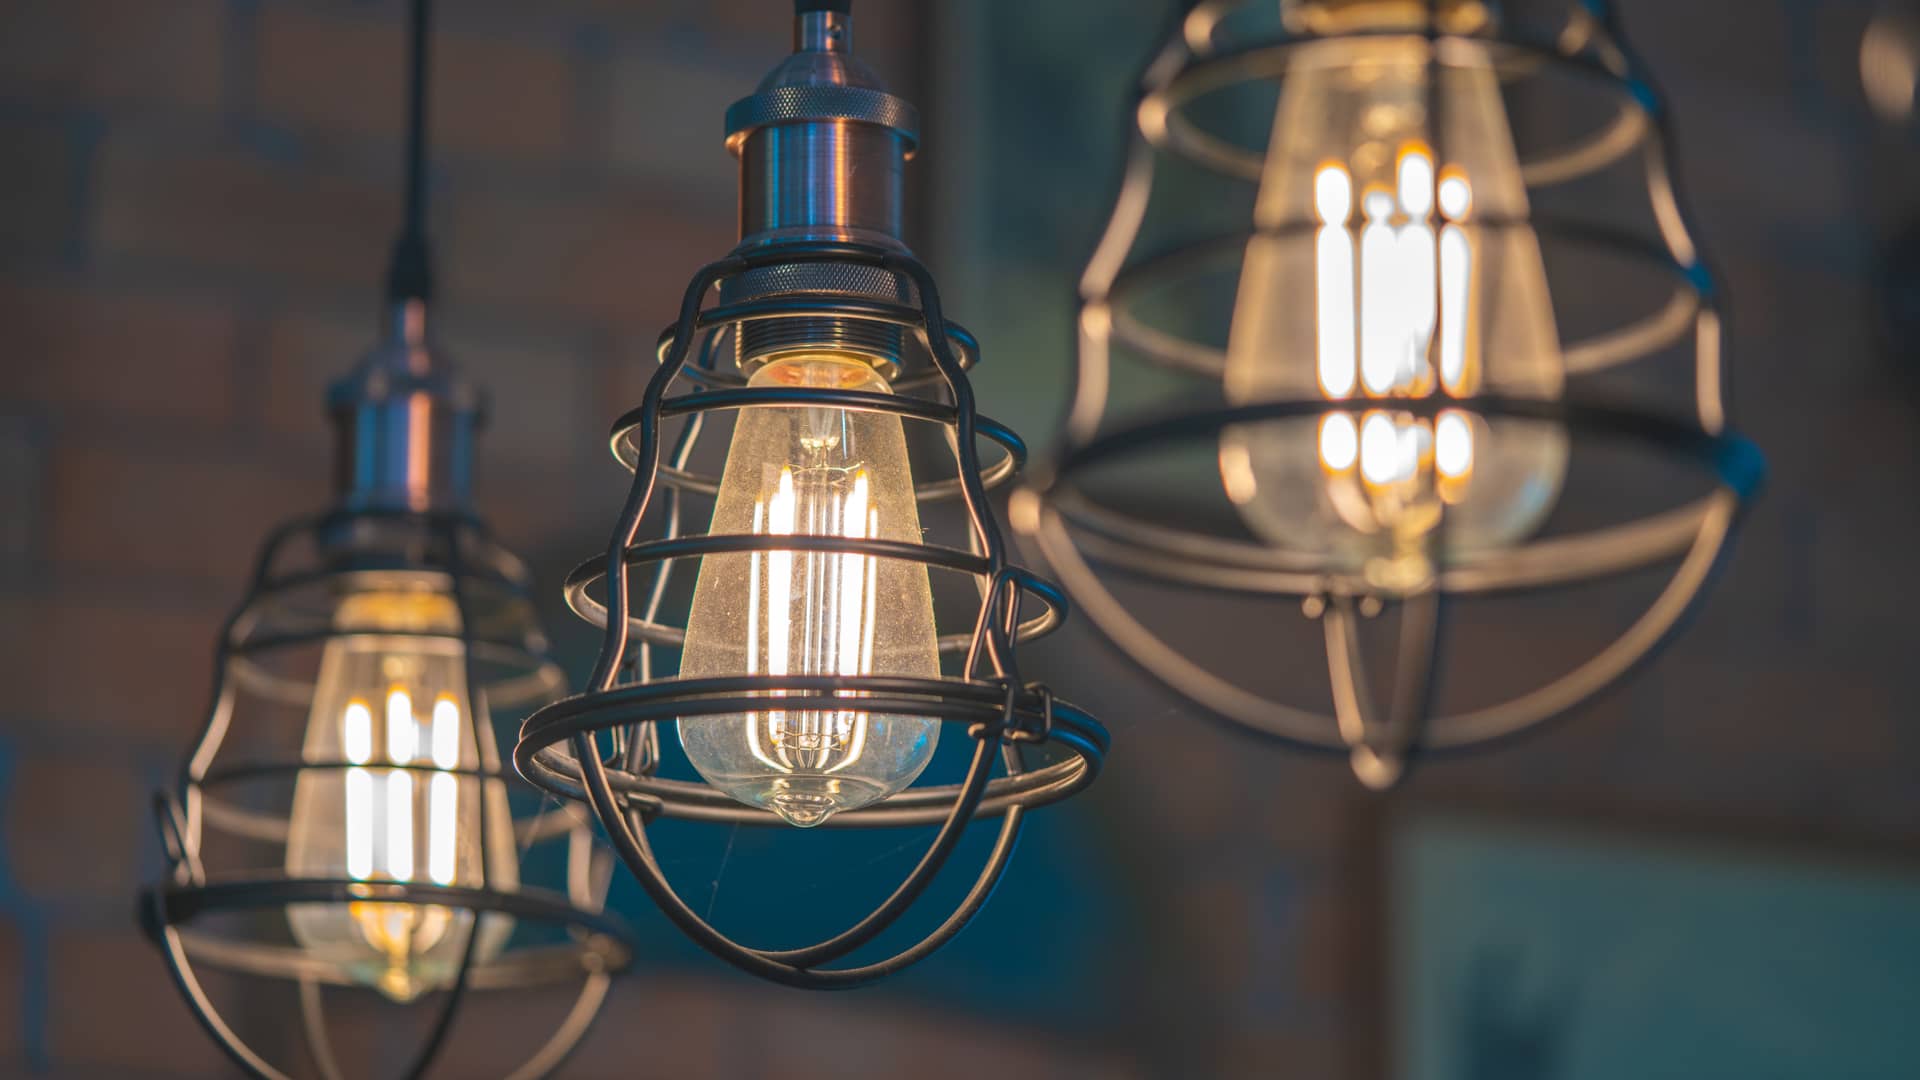 Lámparas colgantes de estilo industrial, iluminadas gracias a una tarifa de luz de imagina energía